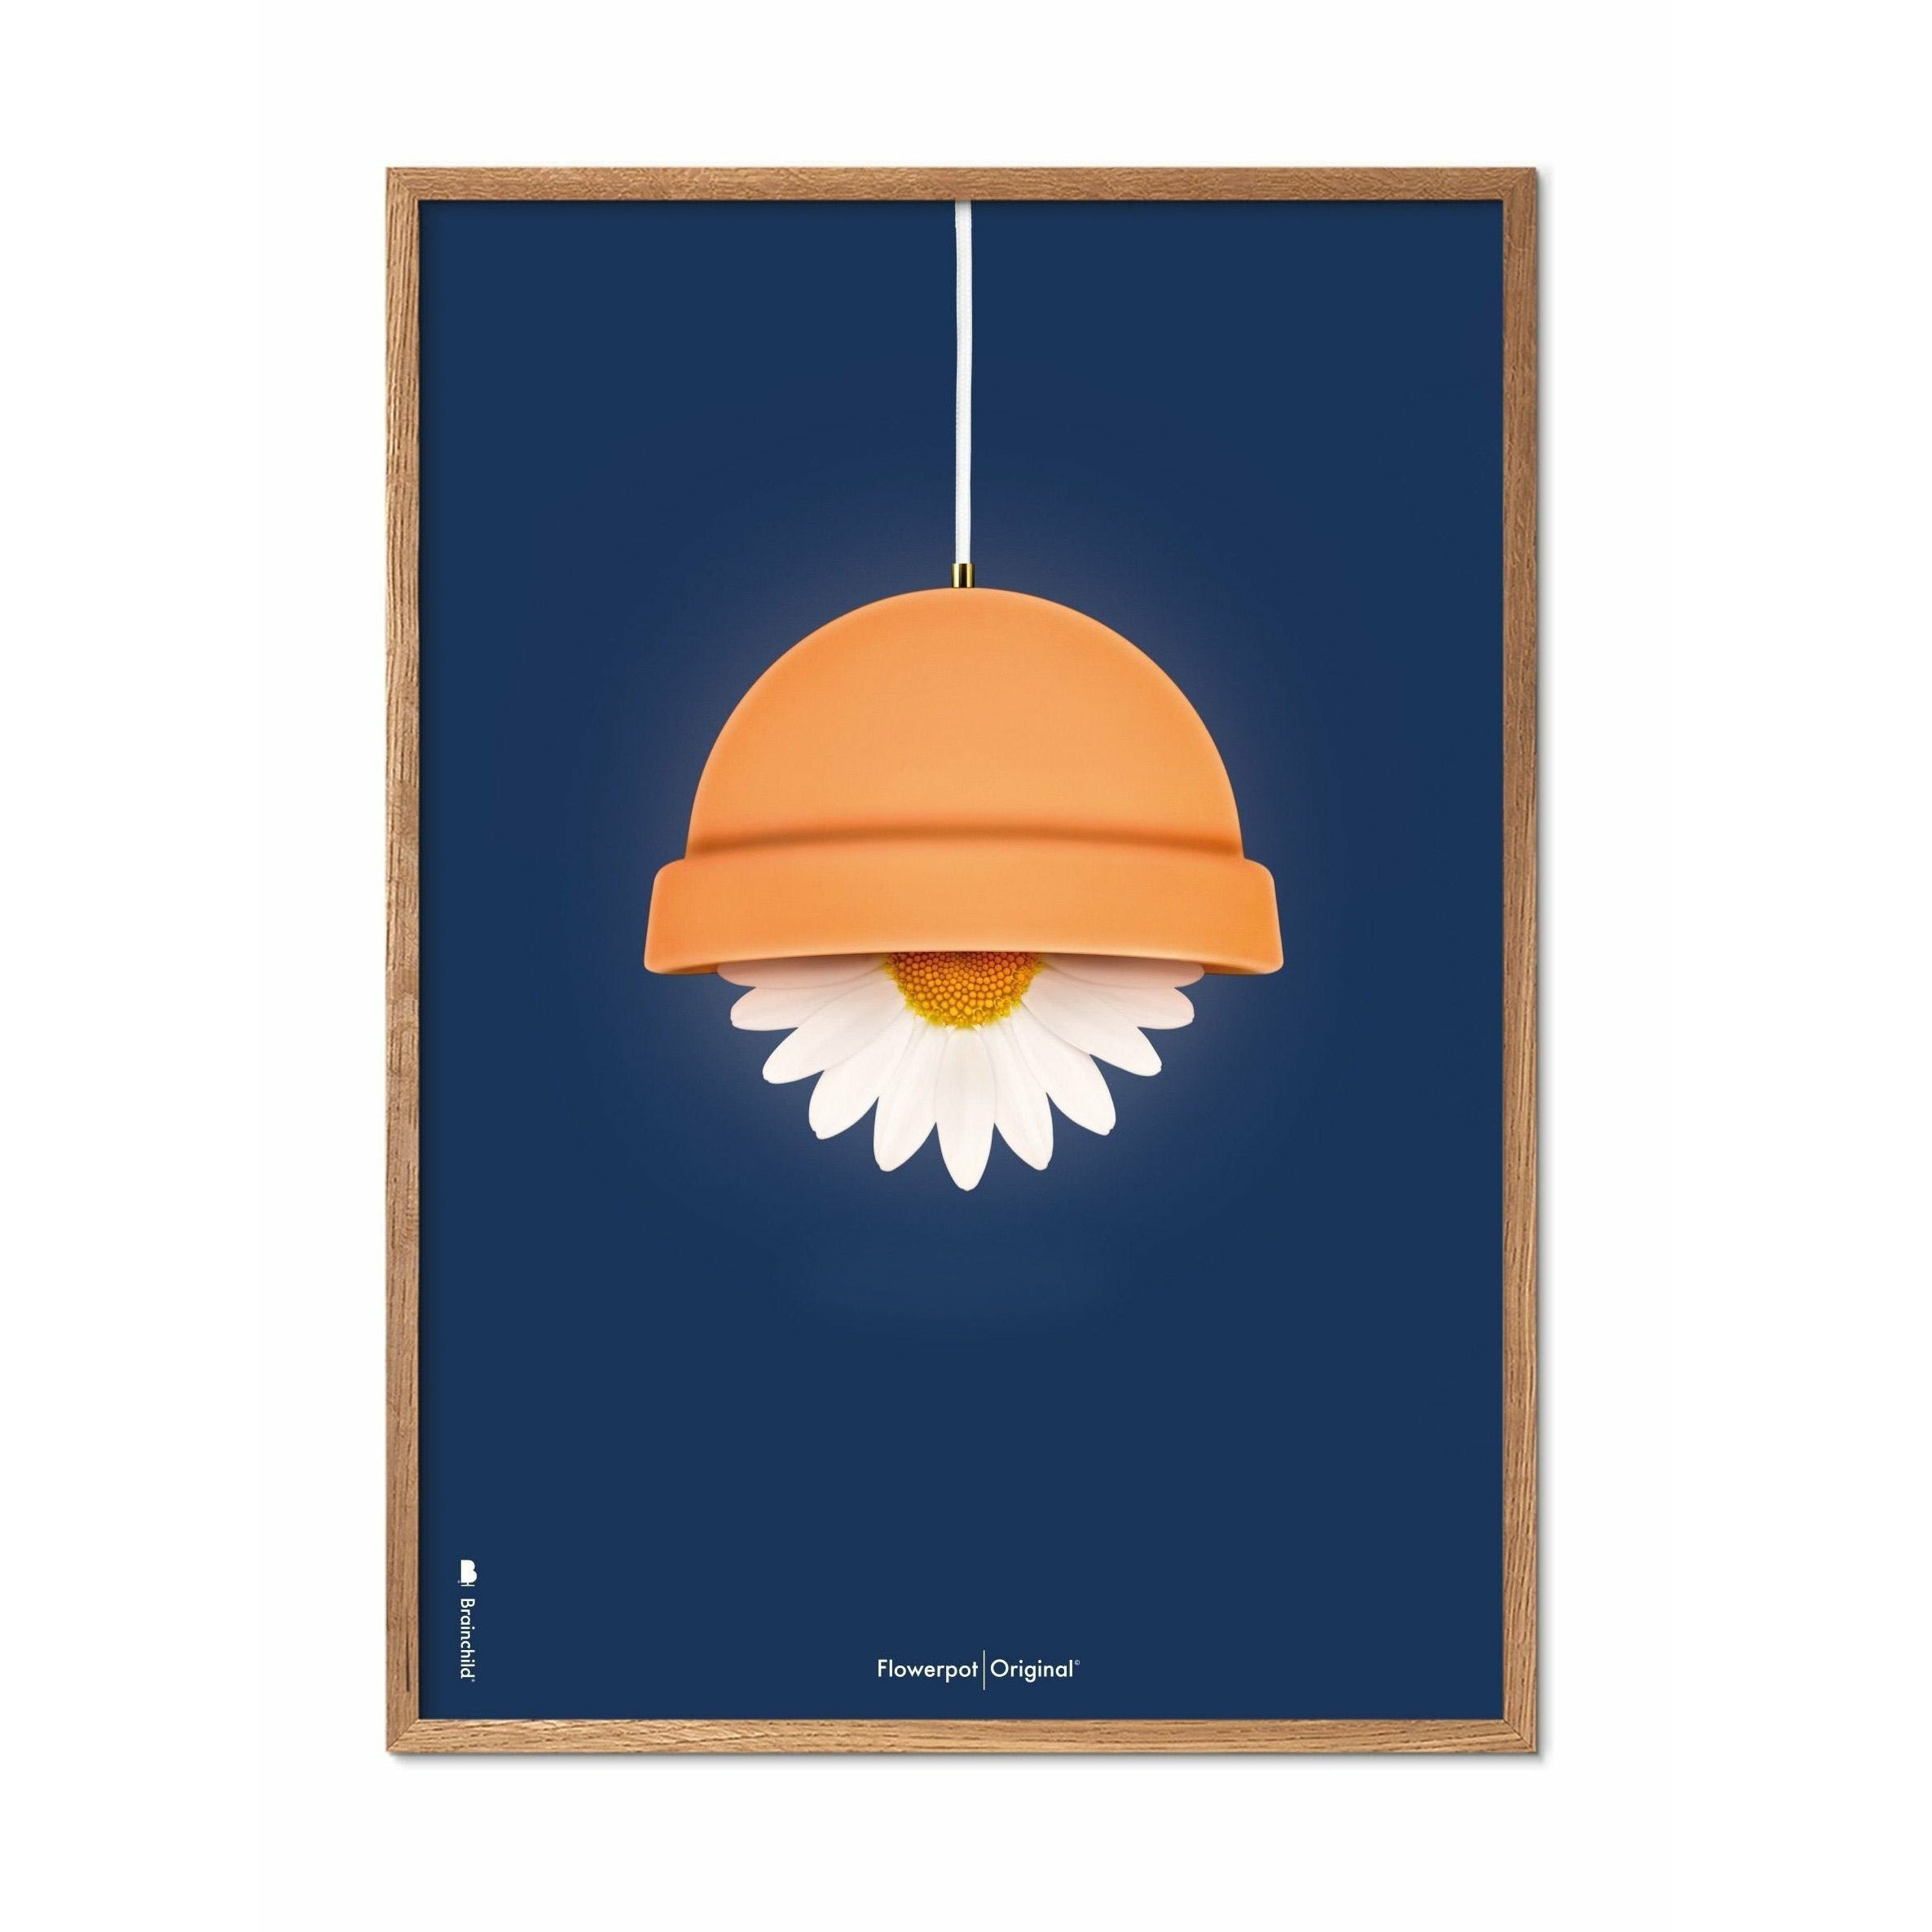 Brainchild Blumentopf Classic Poster, Rahmen aus hellem Holz 70x100 Cm, dunkelblauer Hintergrund